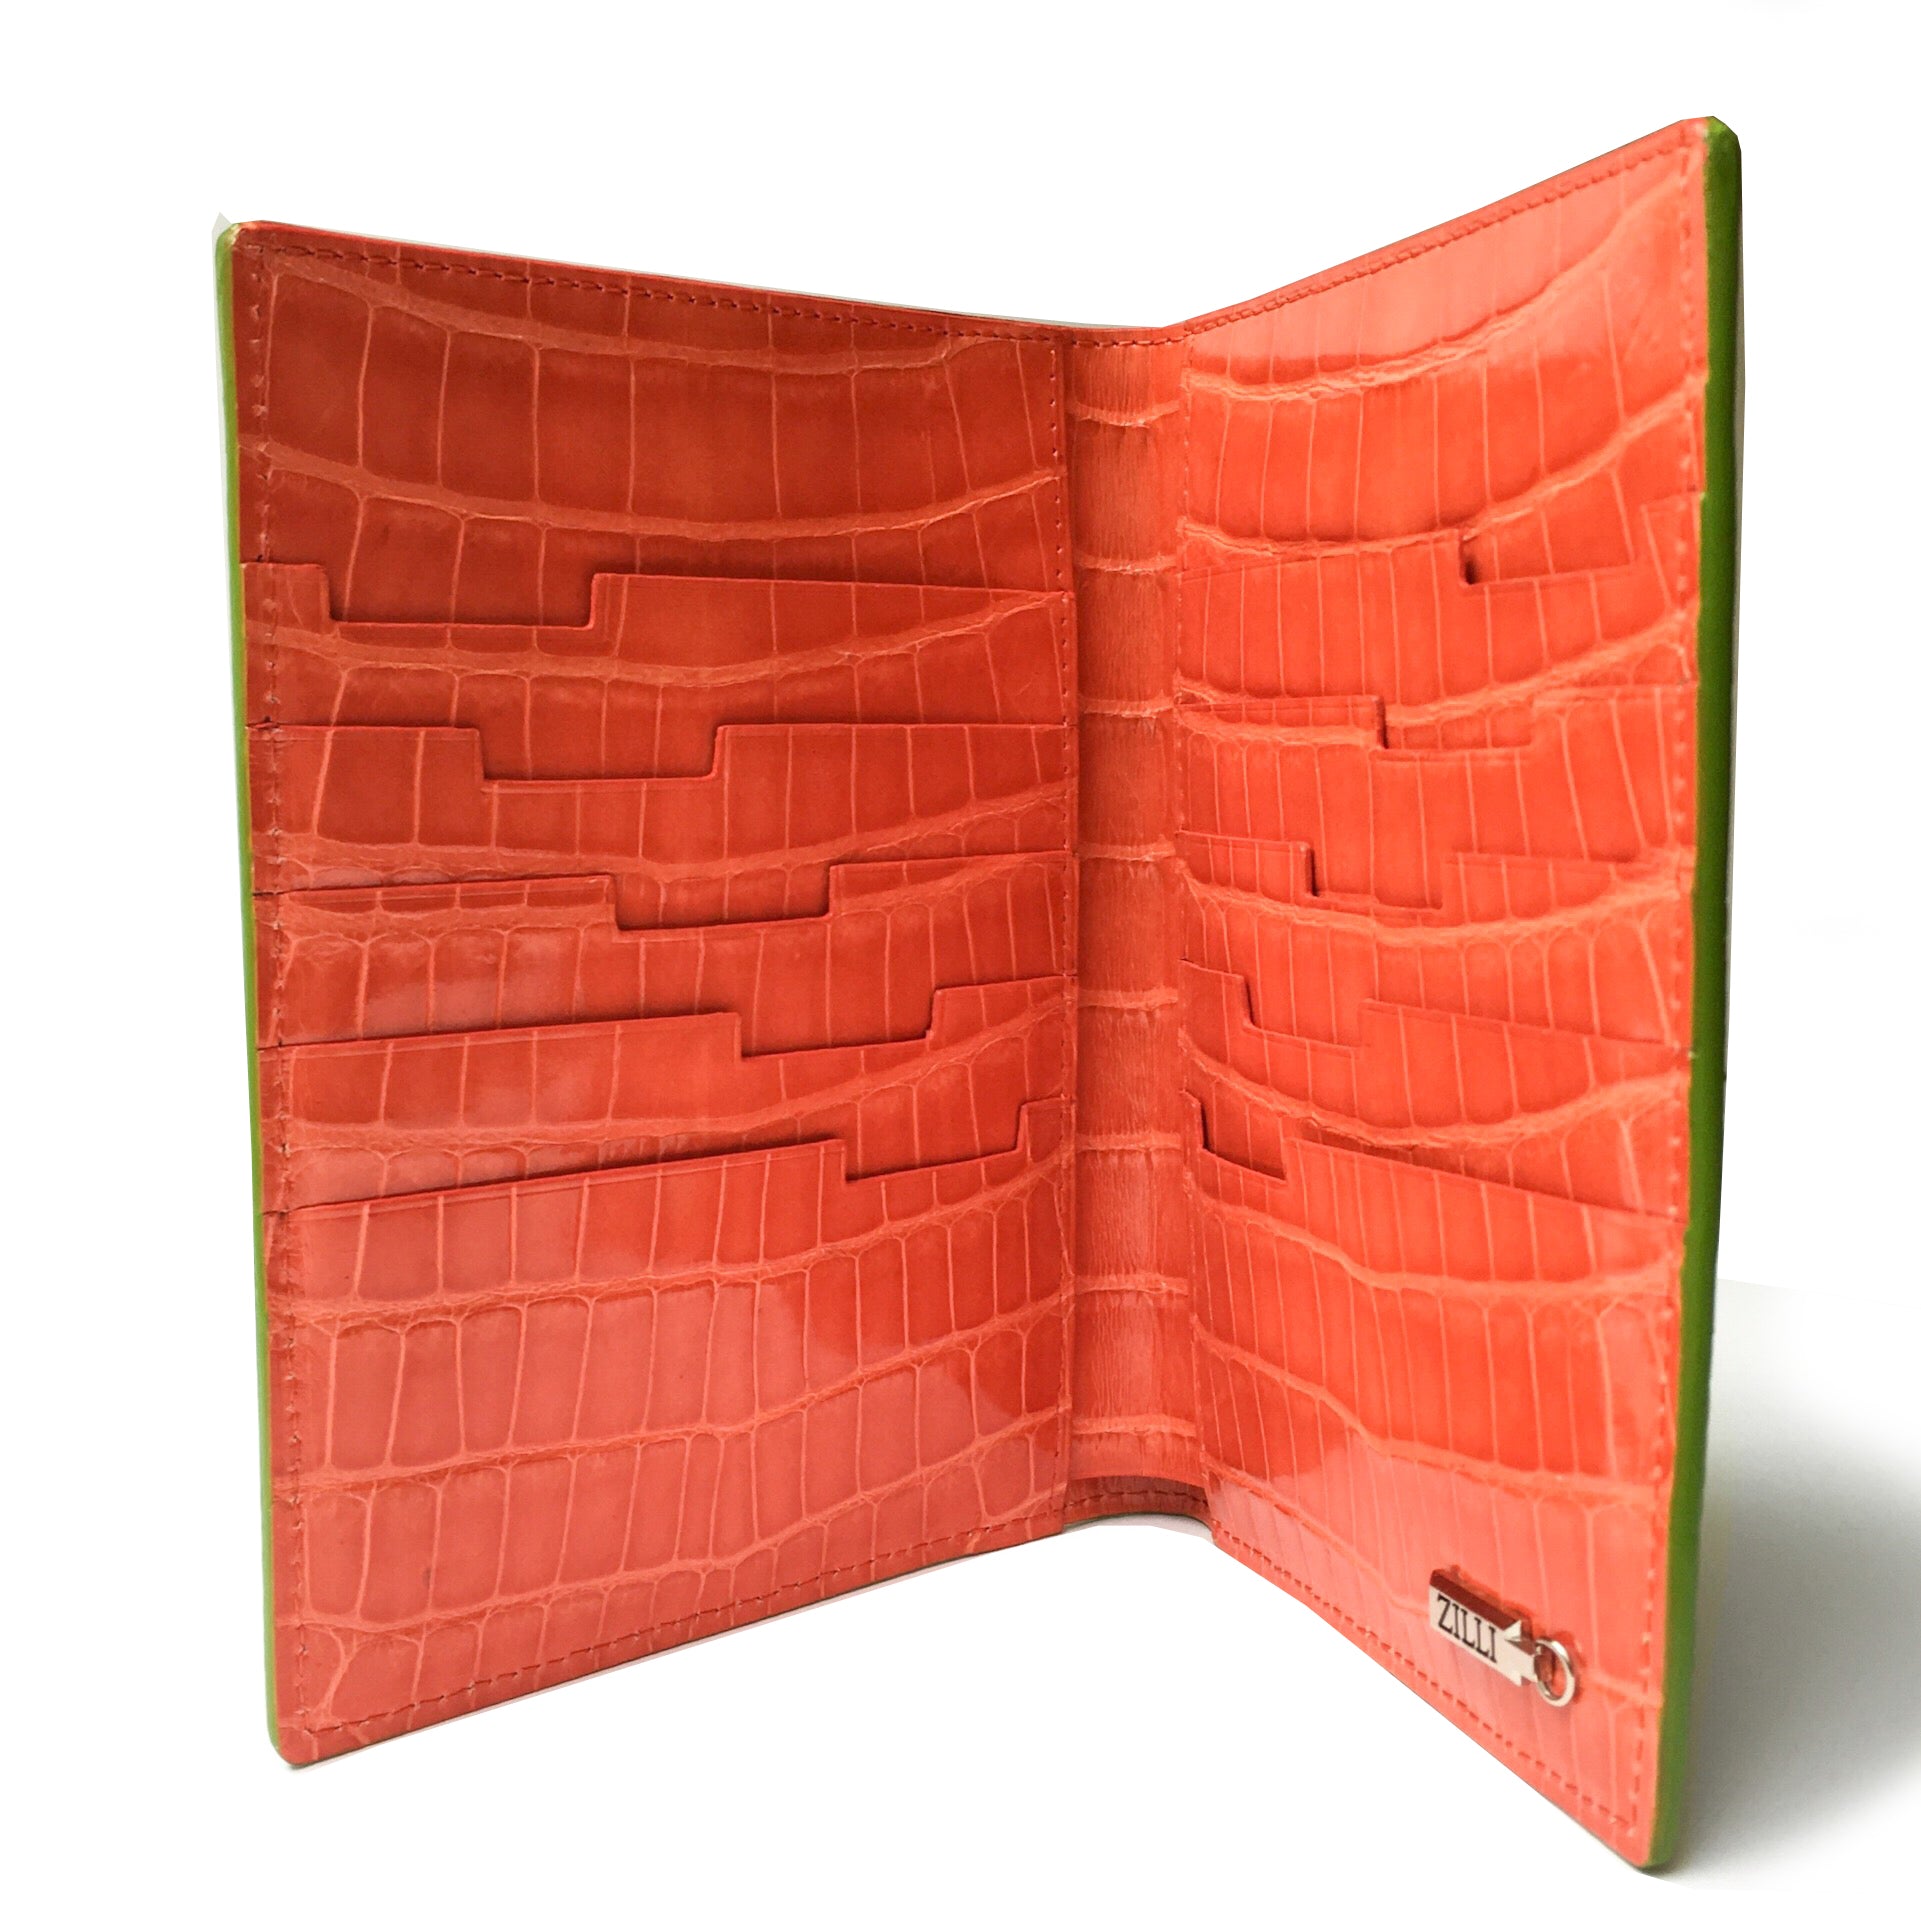 ZILLI／ジリー マルチケース パスポートケース アリゲーターレザー ライトグリーン オレンジ バイカラー